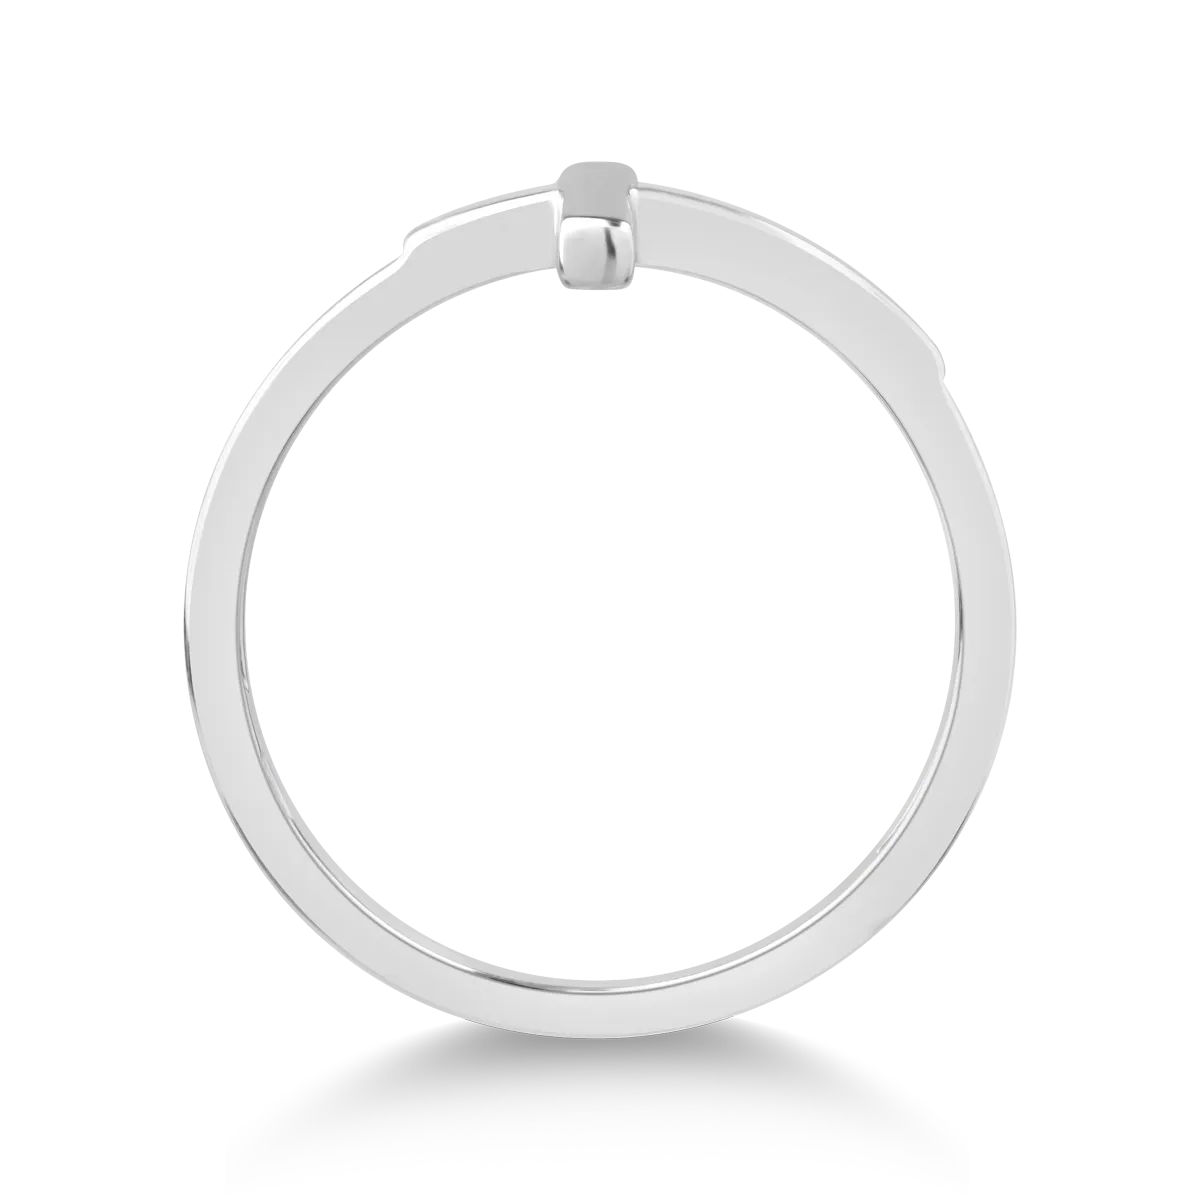 14 karátos fehérarany gyűrű